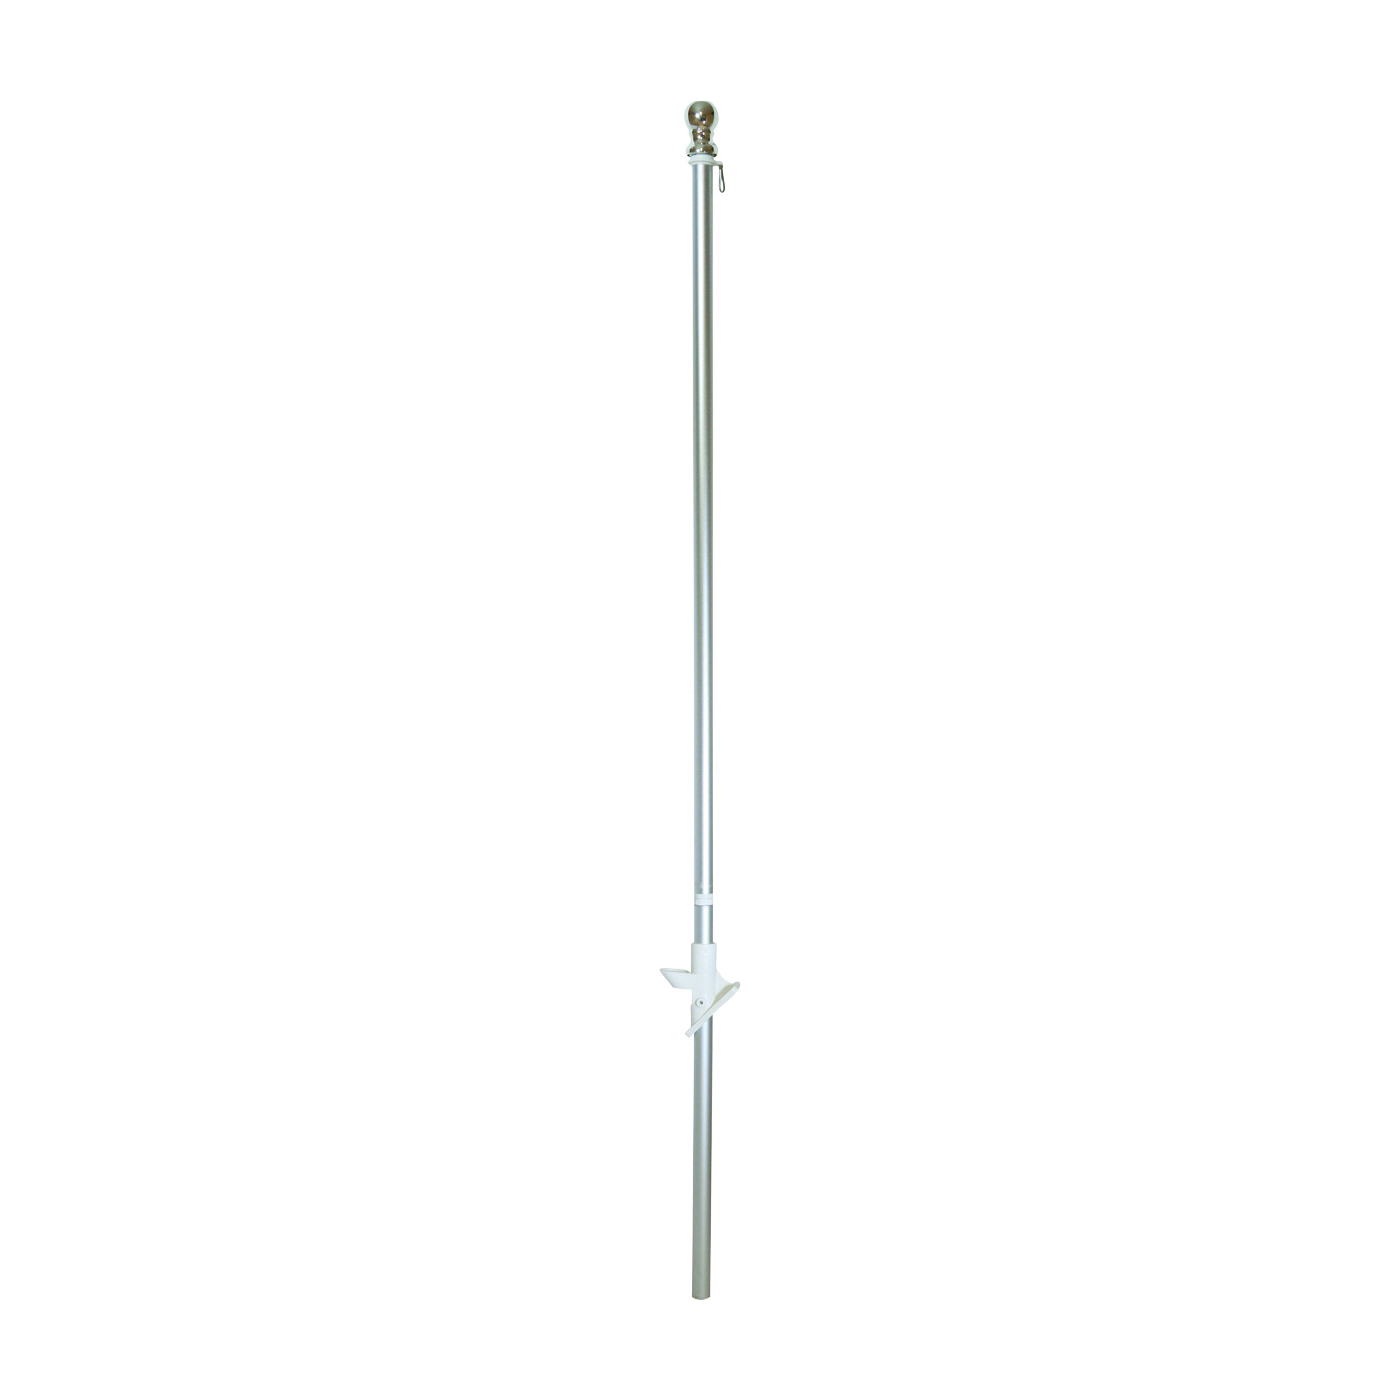 29407-TANGLE Flag Pole, 1 in Dia, Aluminum